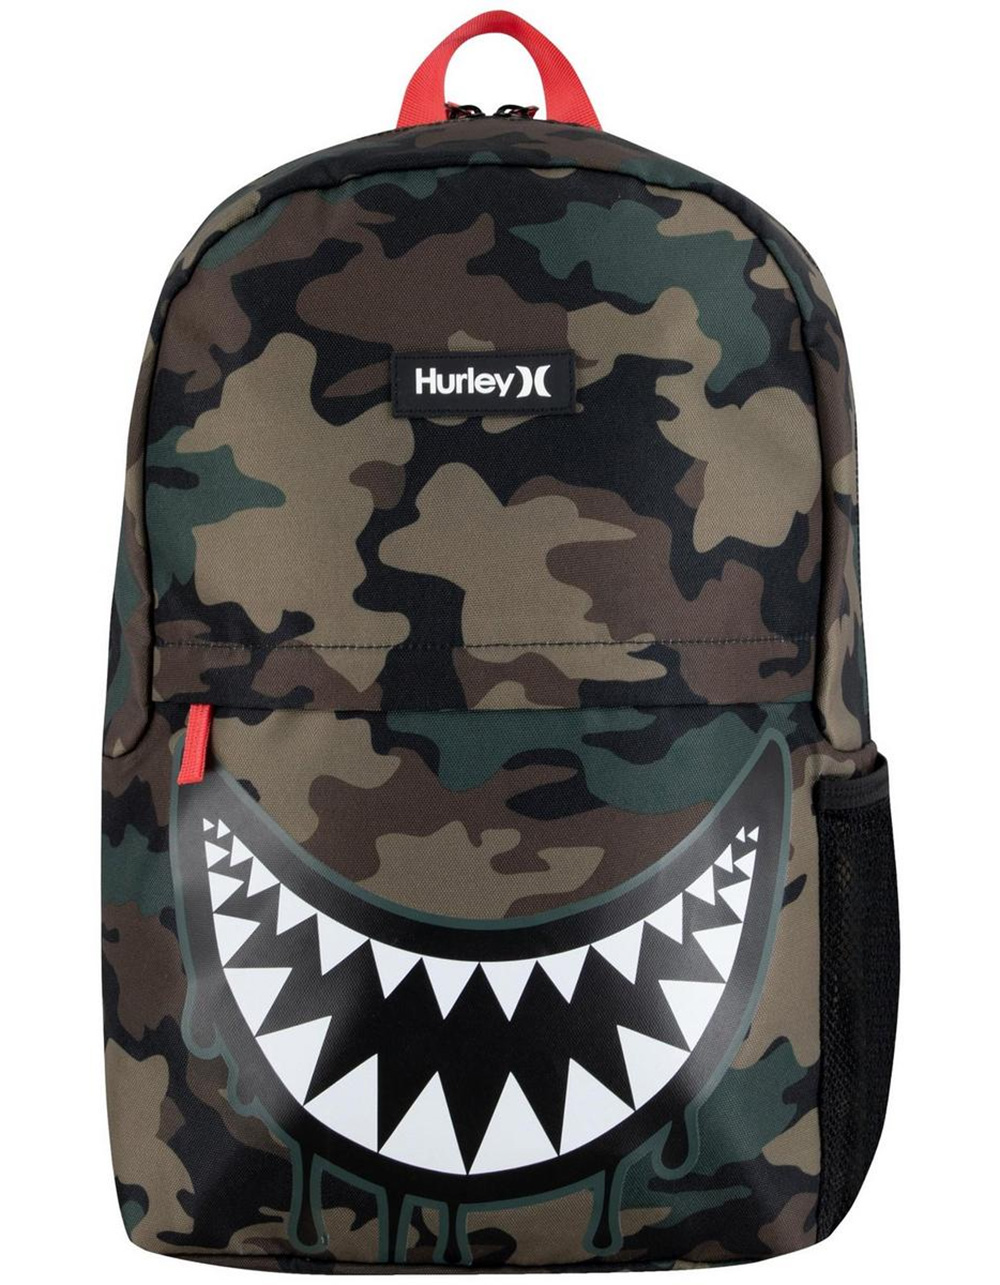 Hurley Shark Bite Backpack Black